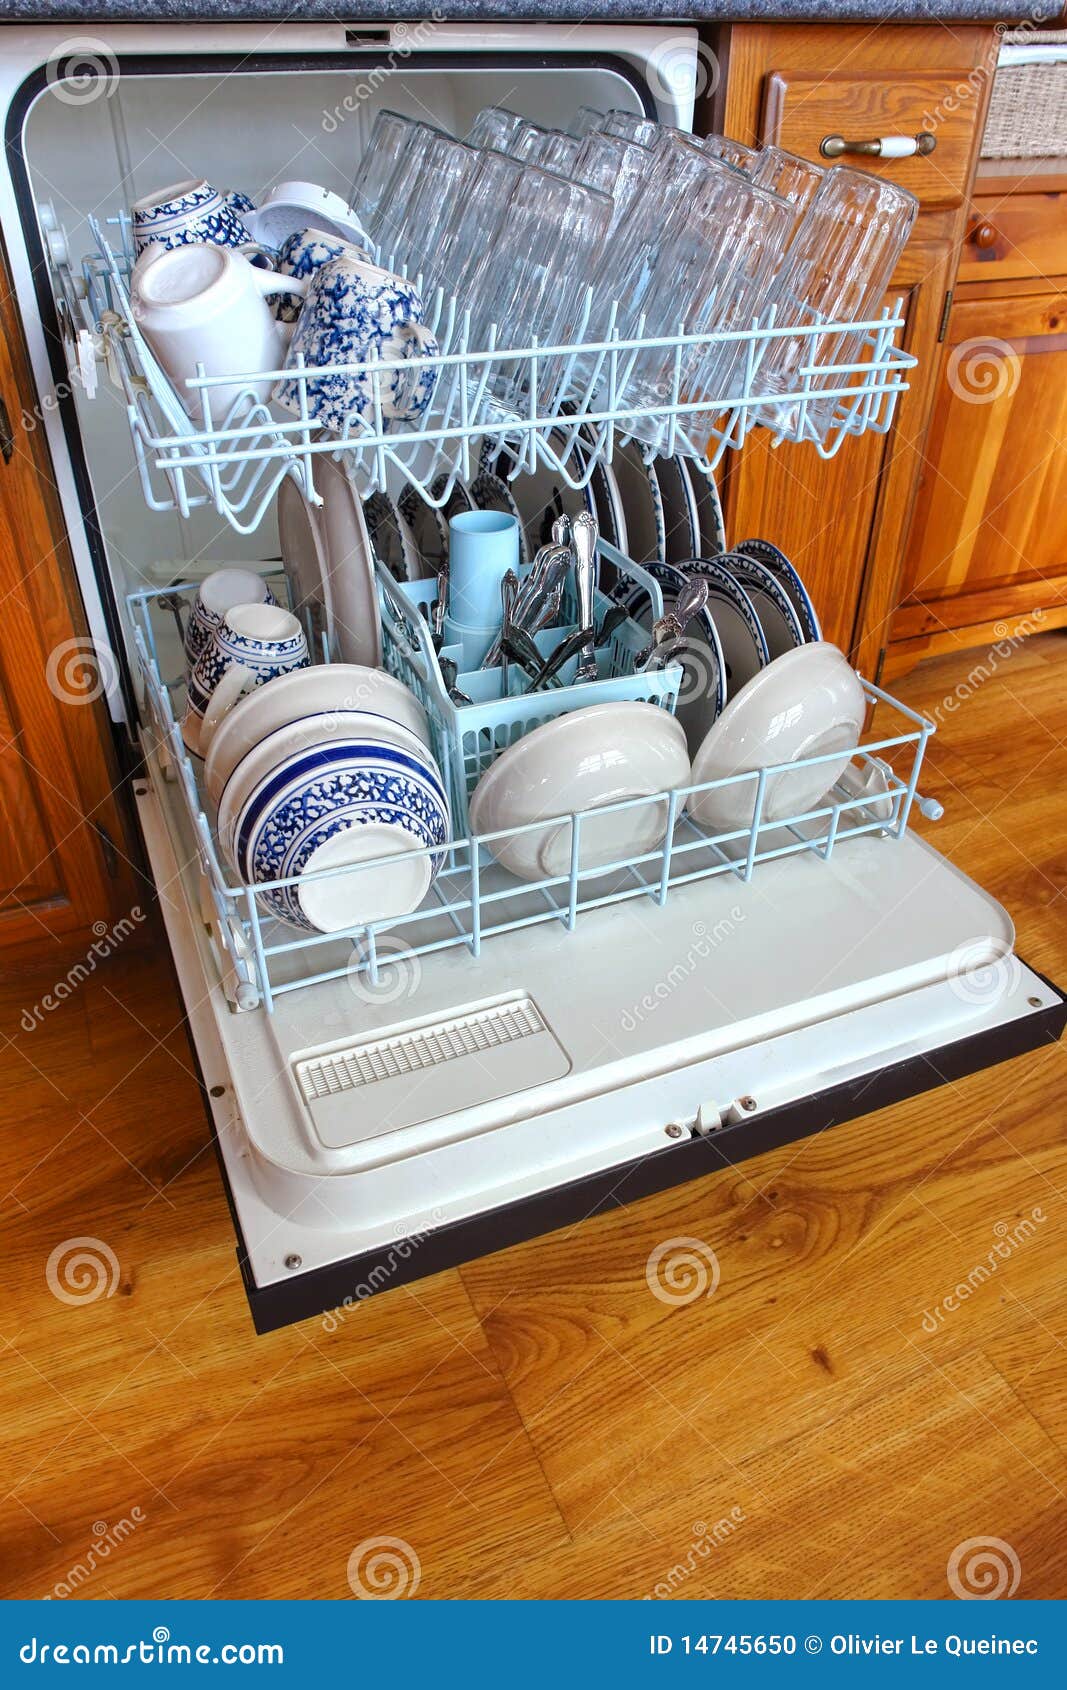 house dishwasher